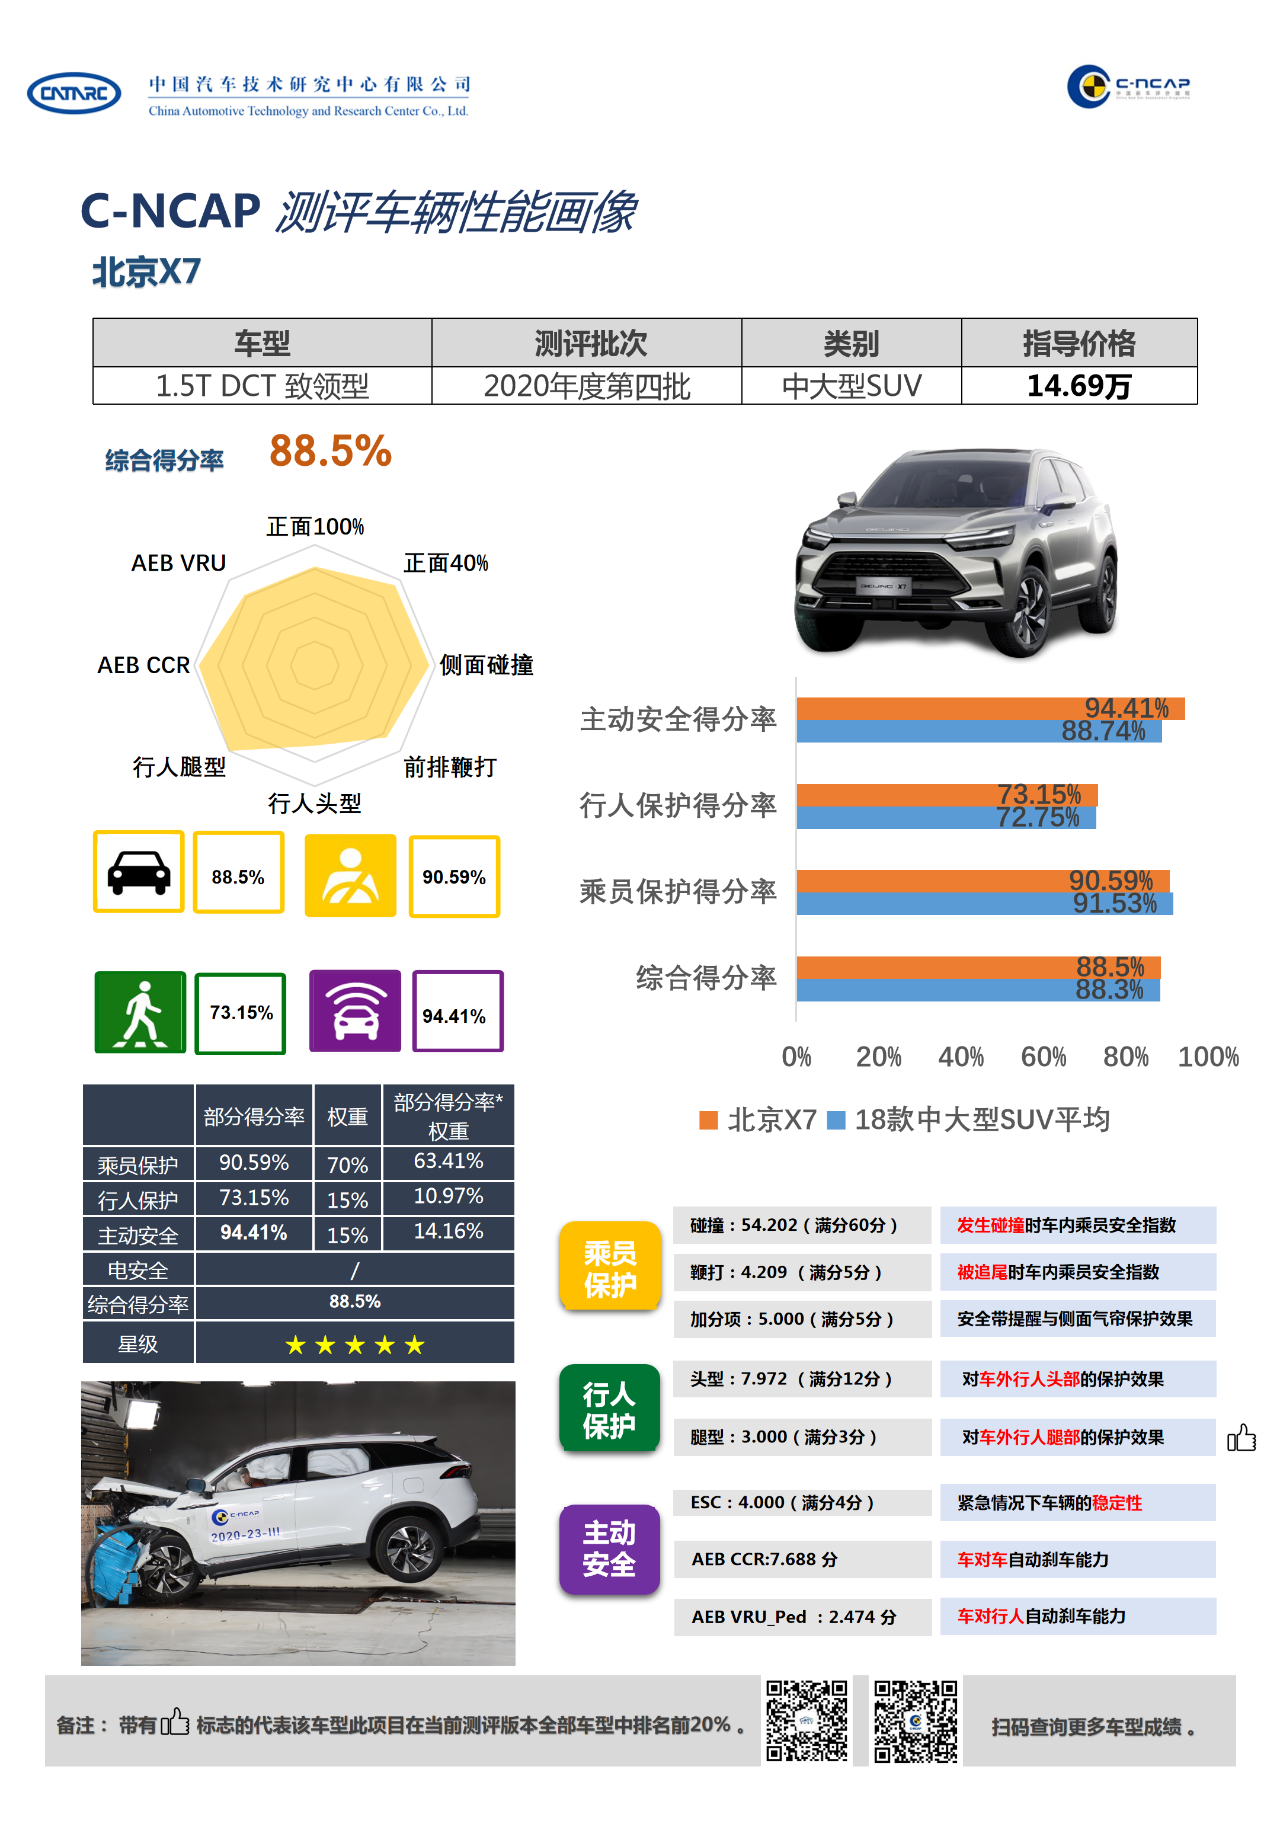 C-NCAP 2020年度第23号车型评价结果